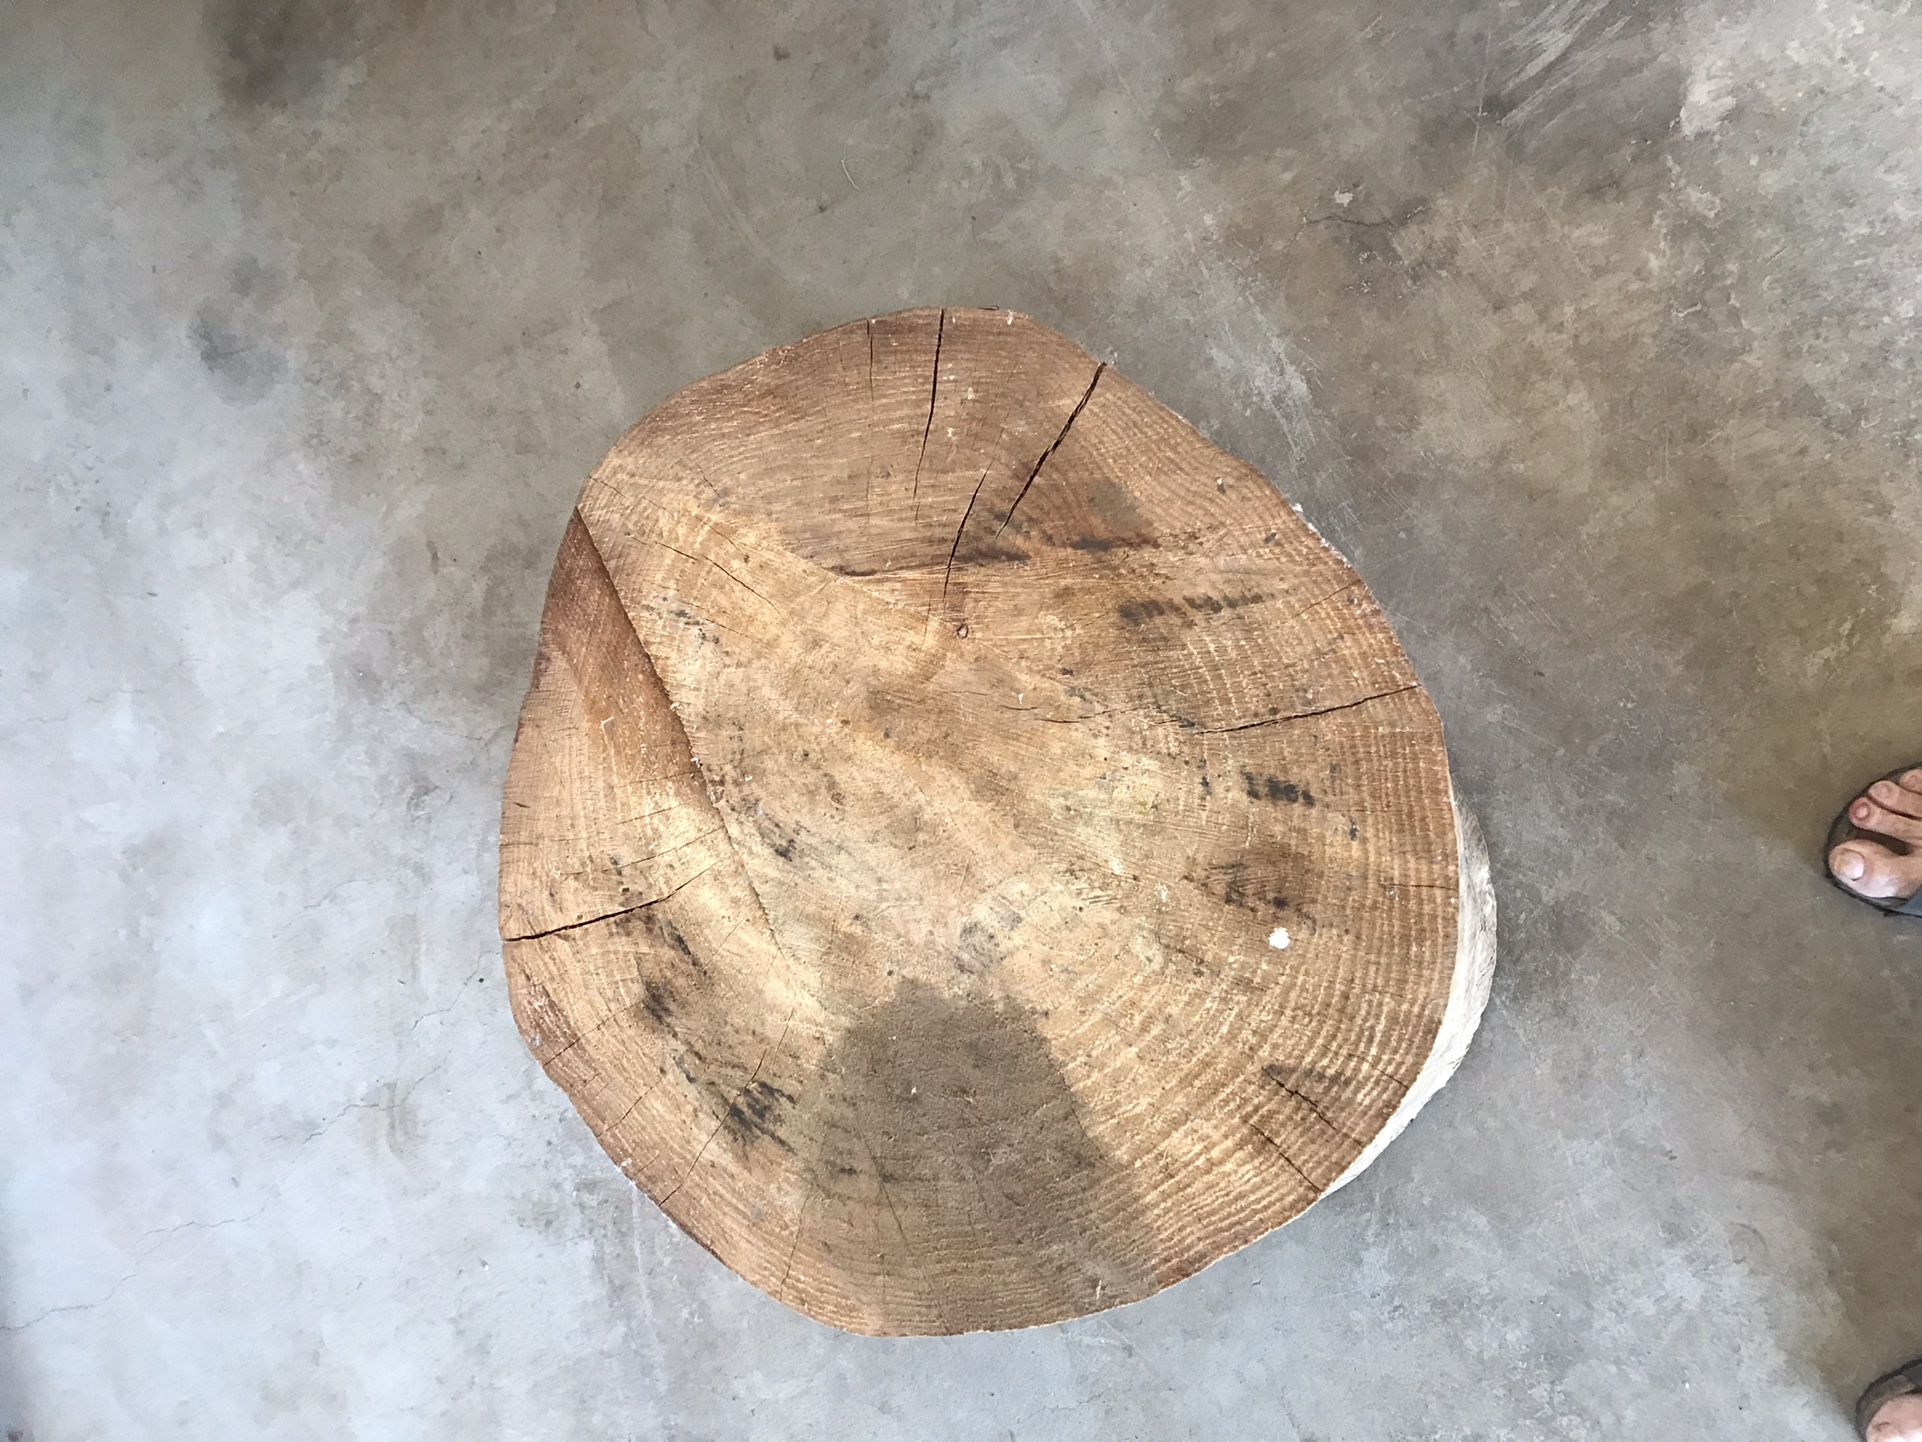 Reclaimed Solid Wood Stump side Table Medium Height